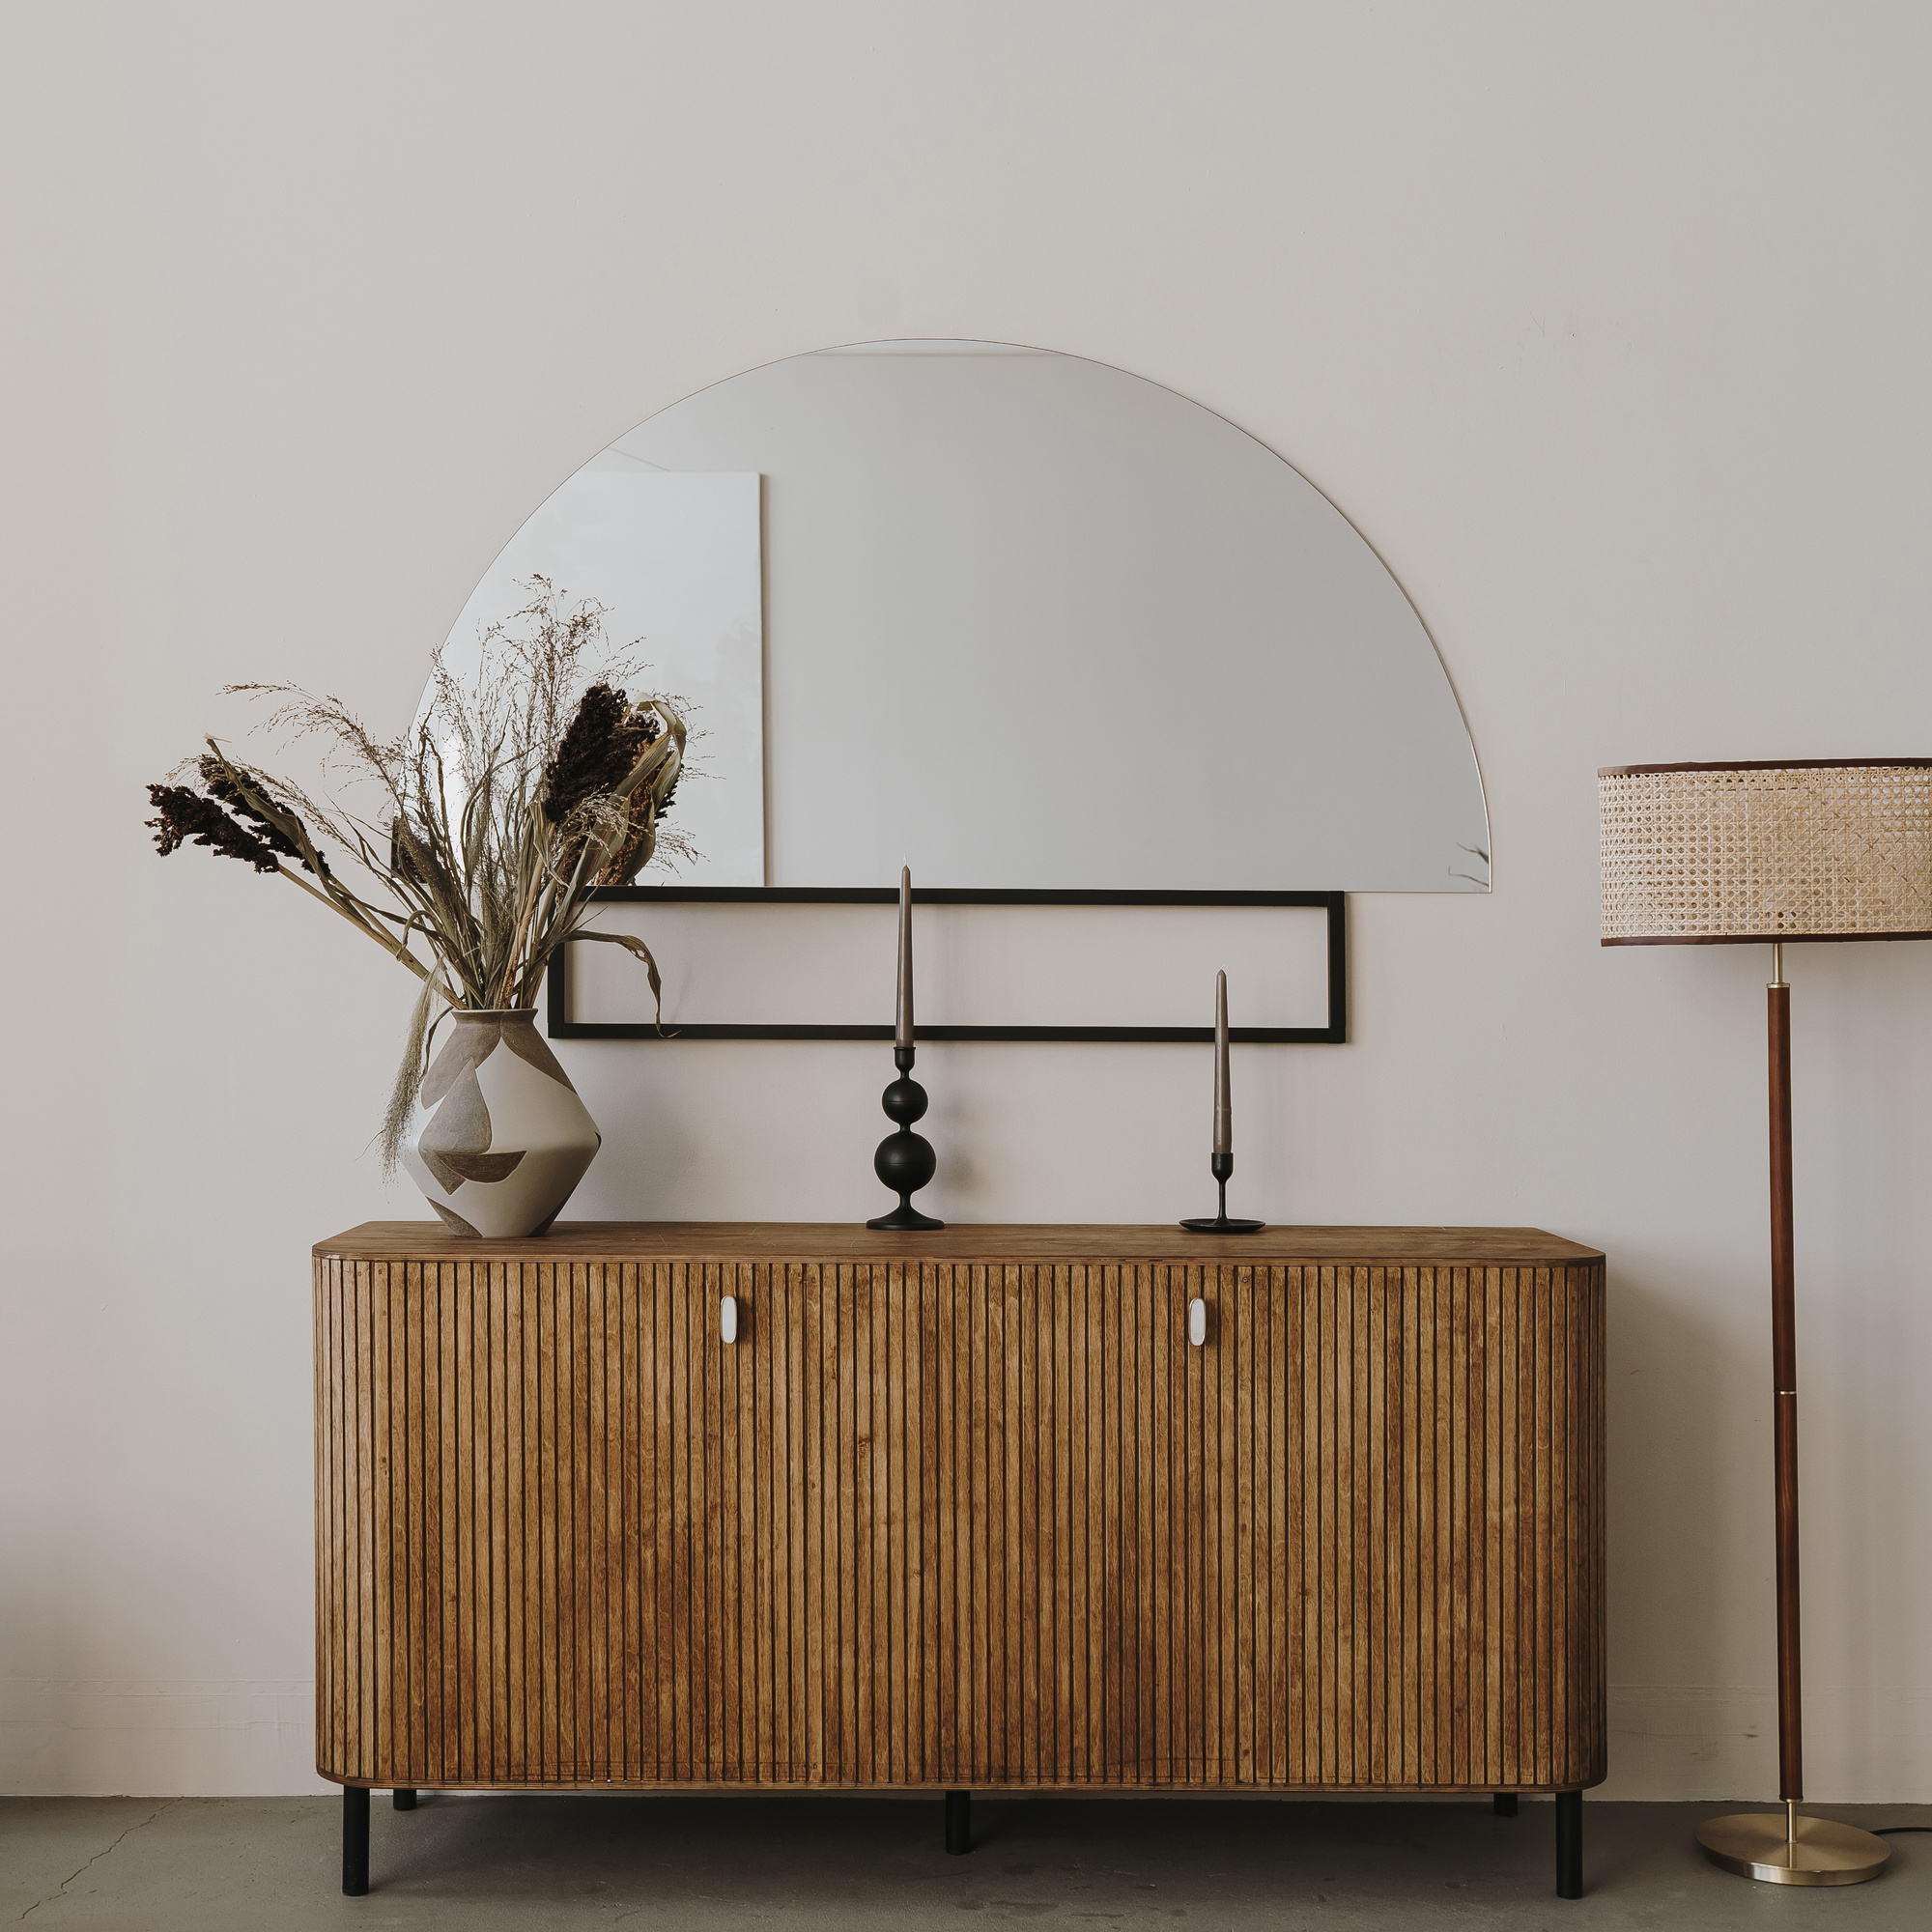 Minimalist Furniture Interior Design